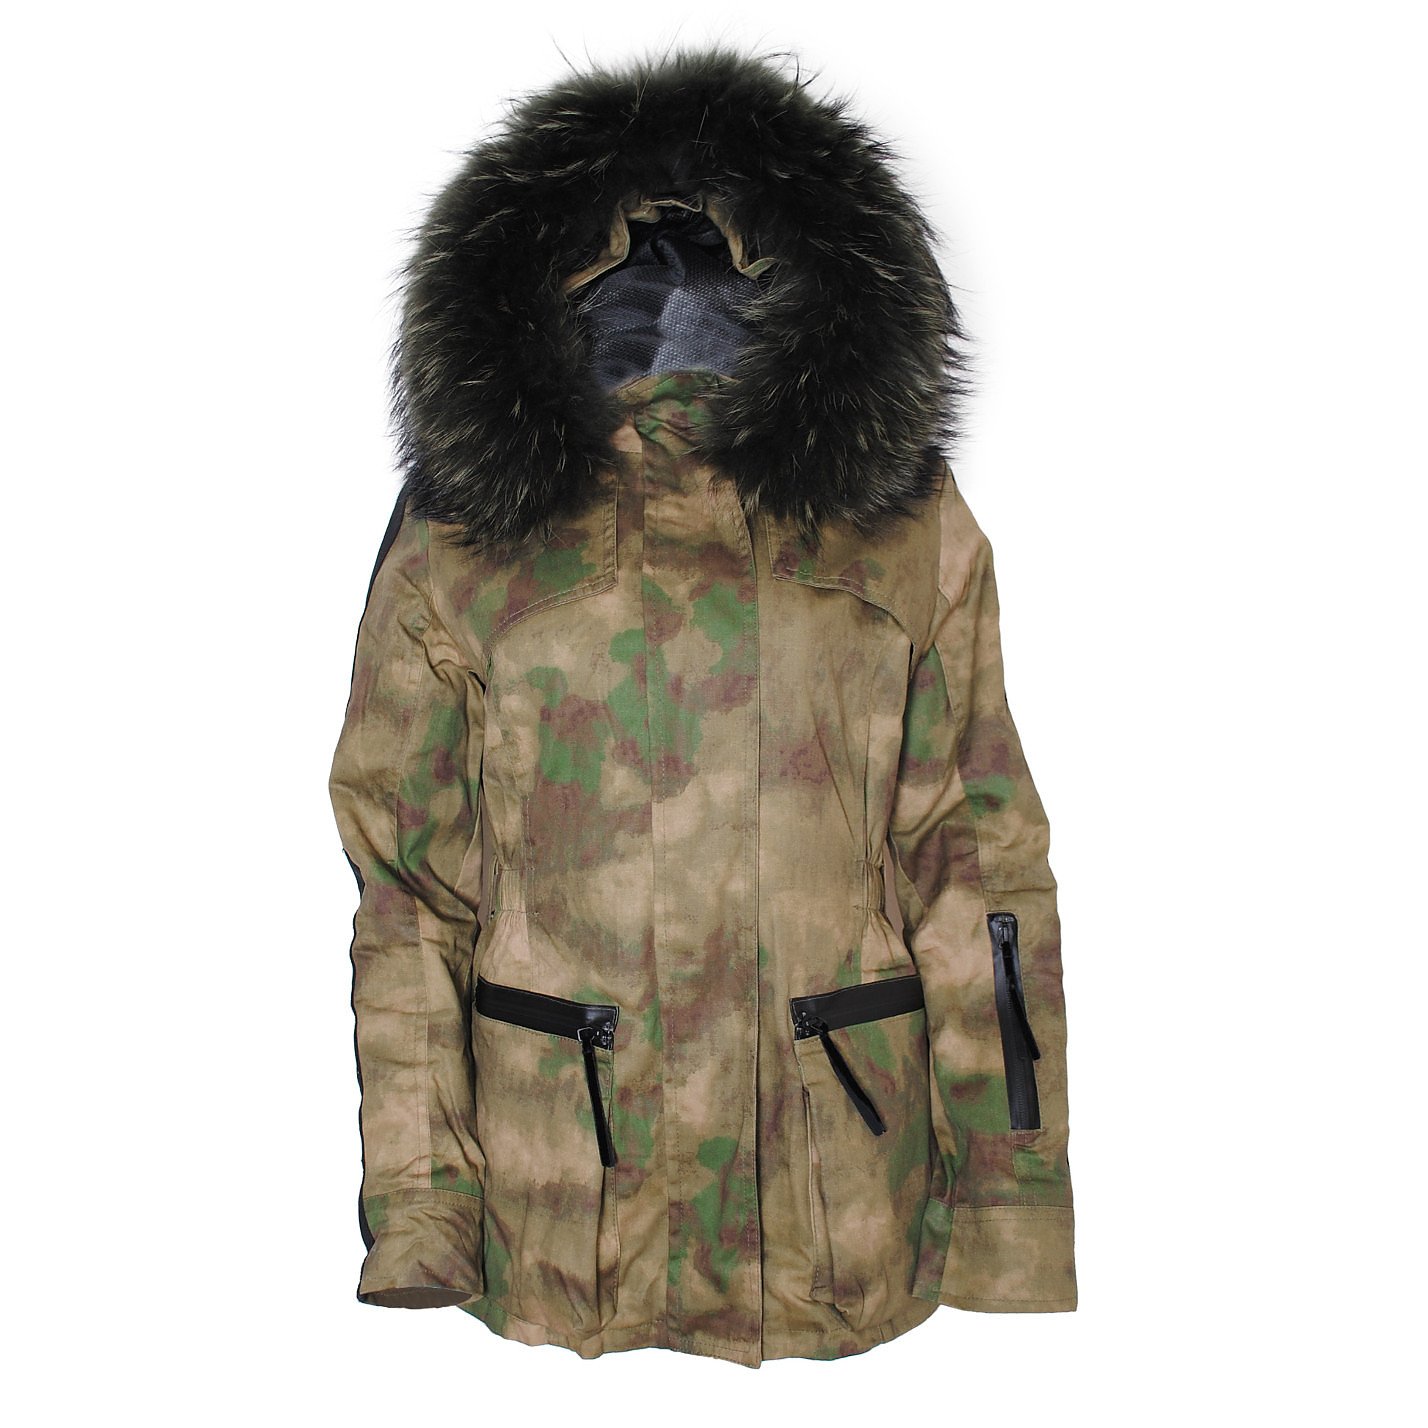 Amanda Wakeley X Troy Camouflage Parka Jacket With Hood